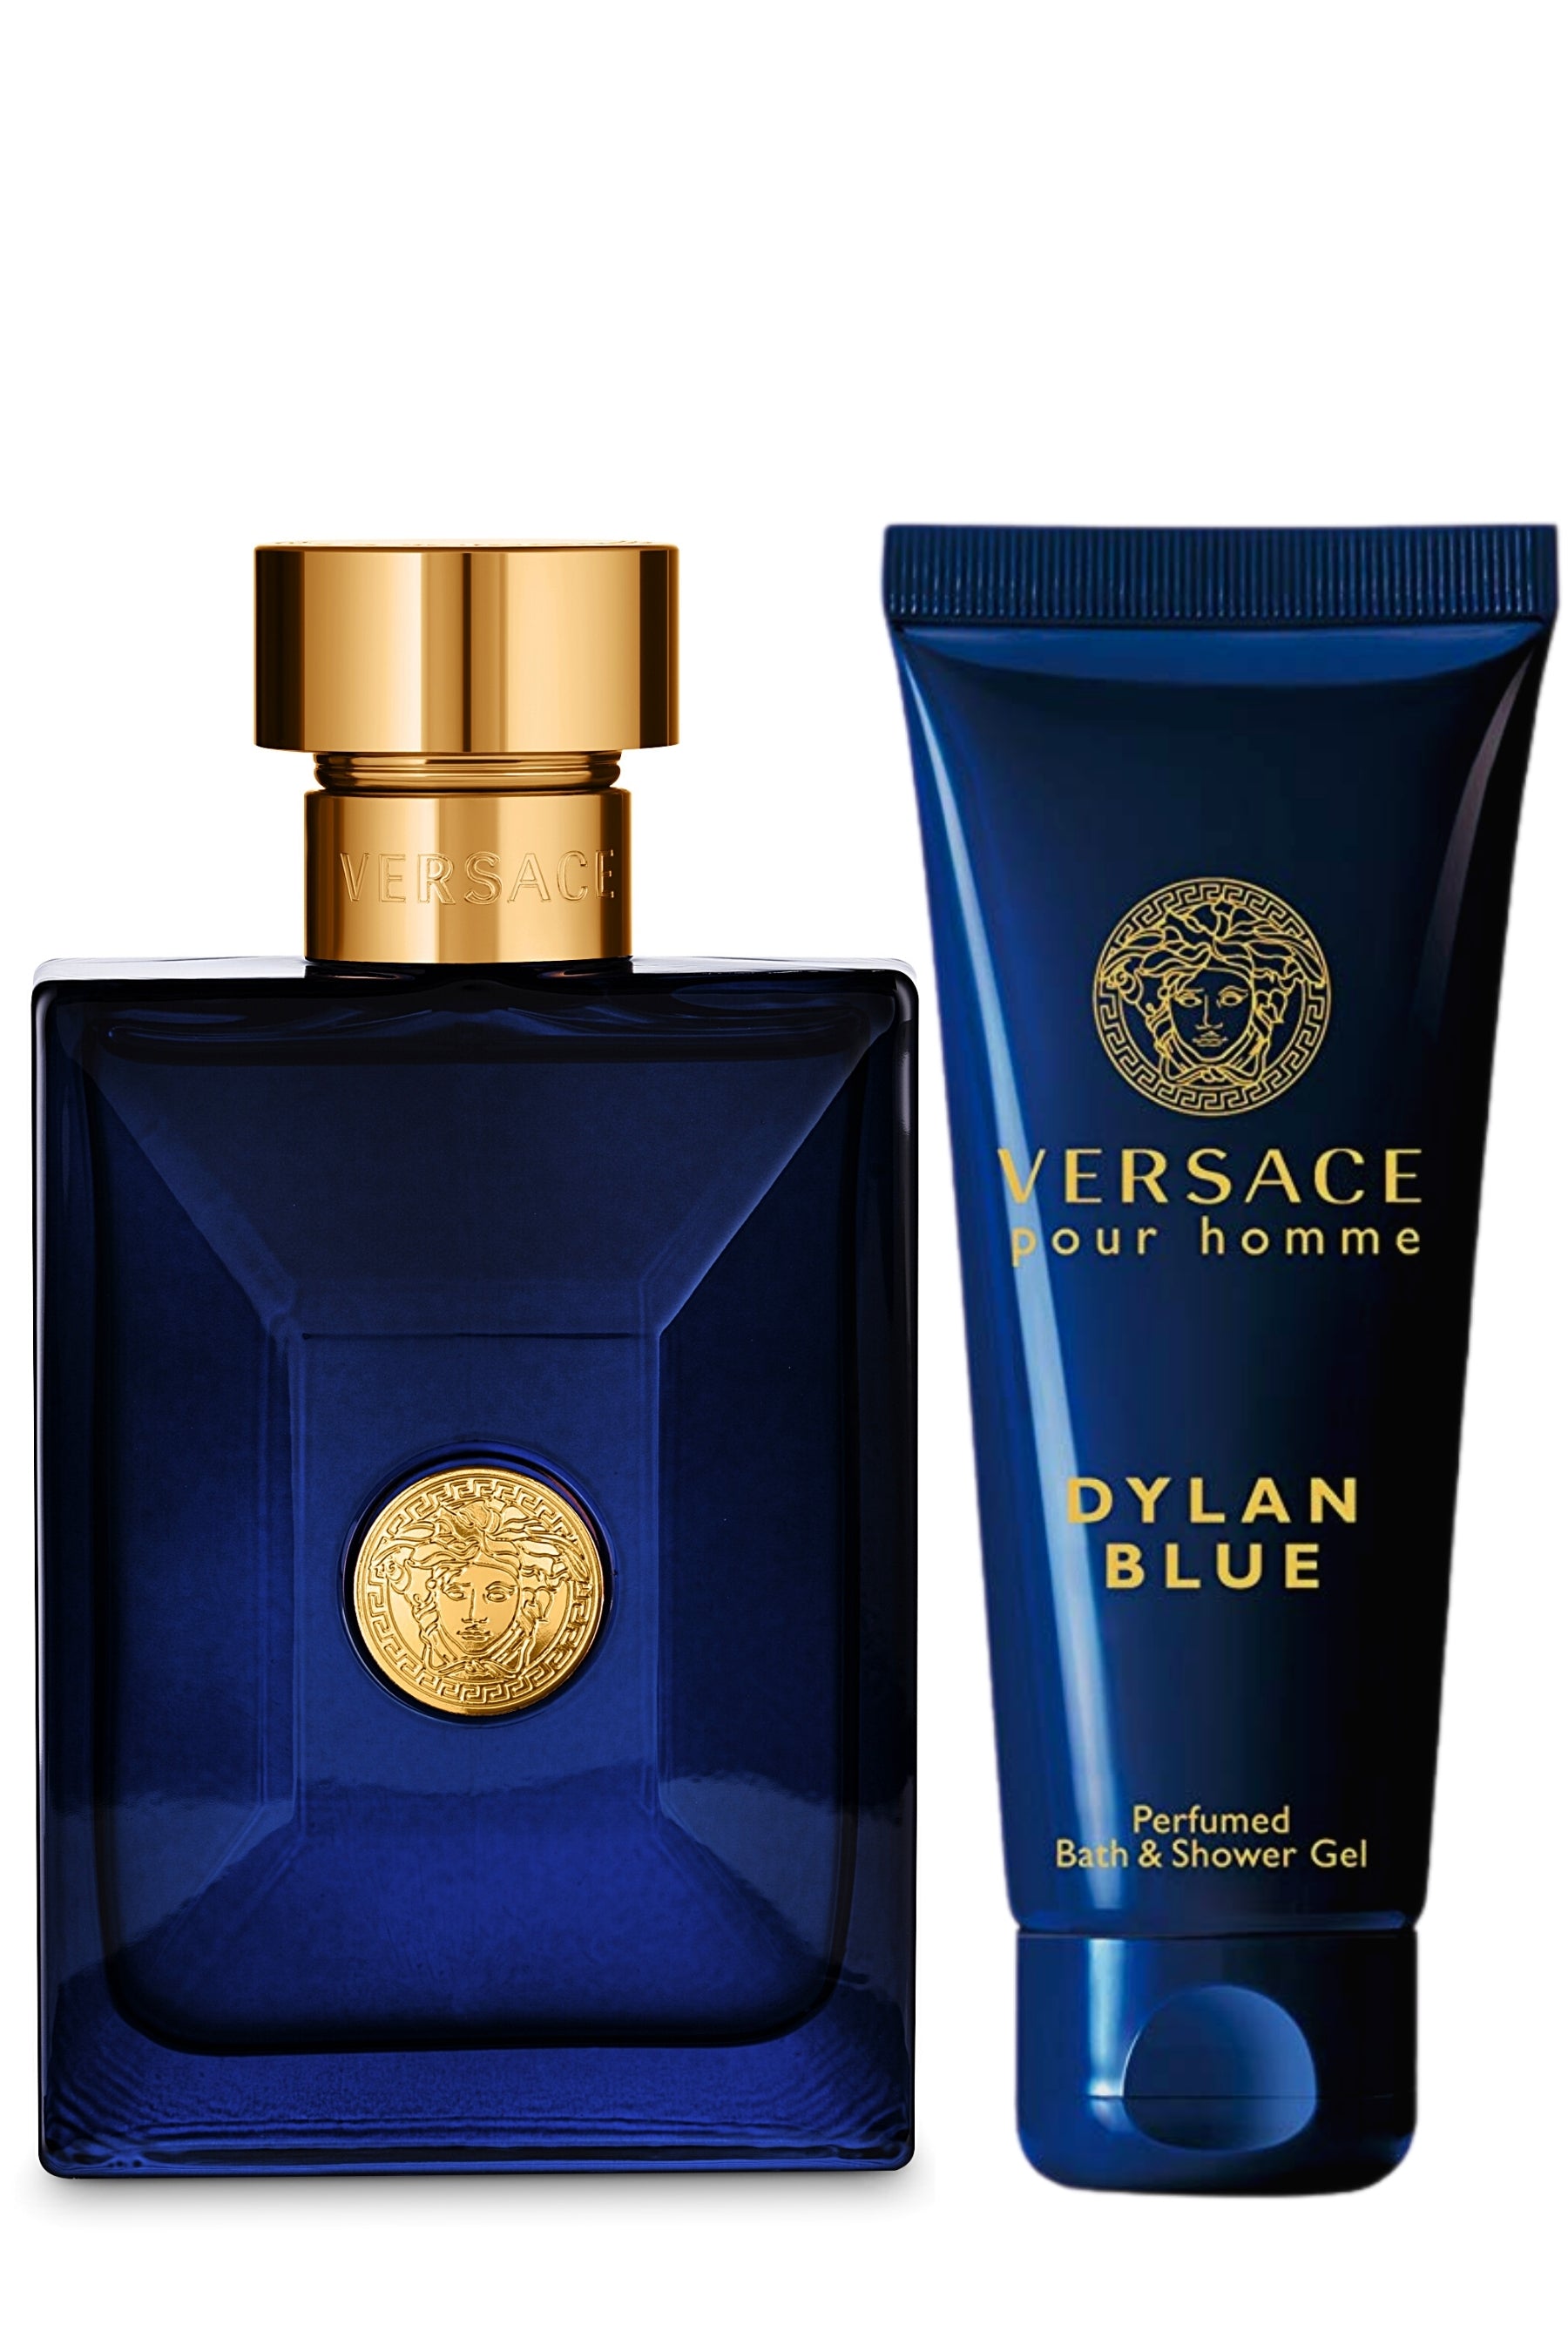 VERSACE DYLAN BLUE Cologne for MEN 2 pcs GIFT SET 3.4 oz EDT Spray + SHOWER  GEL